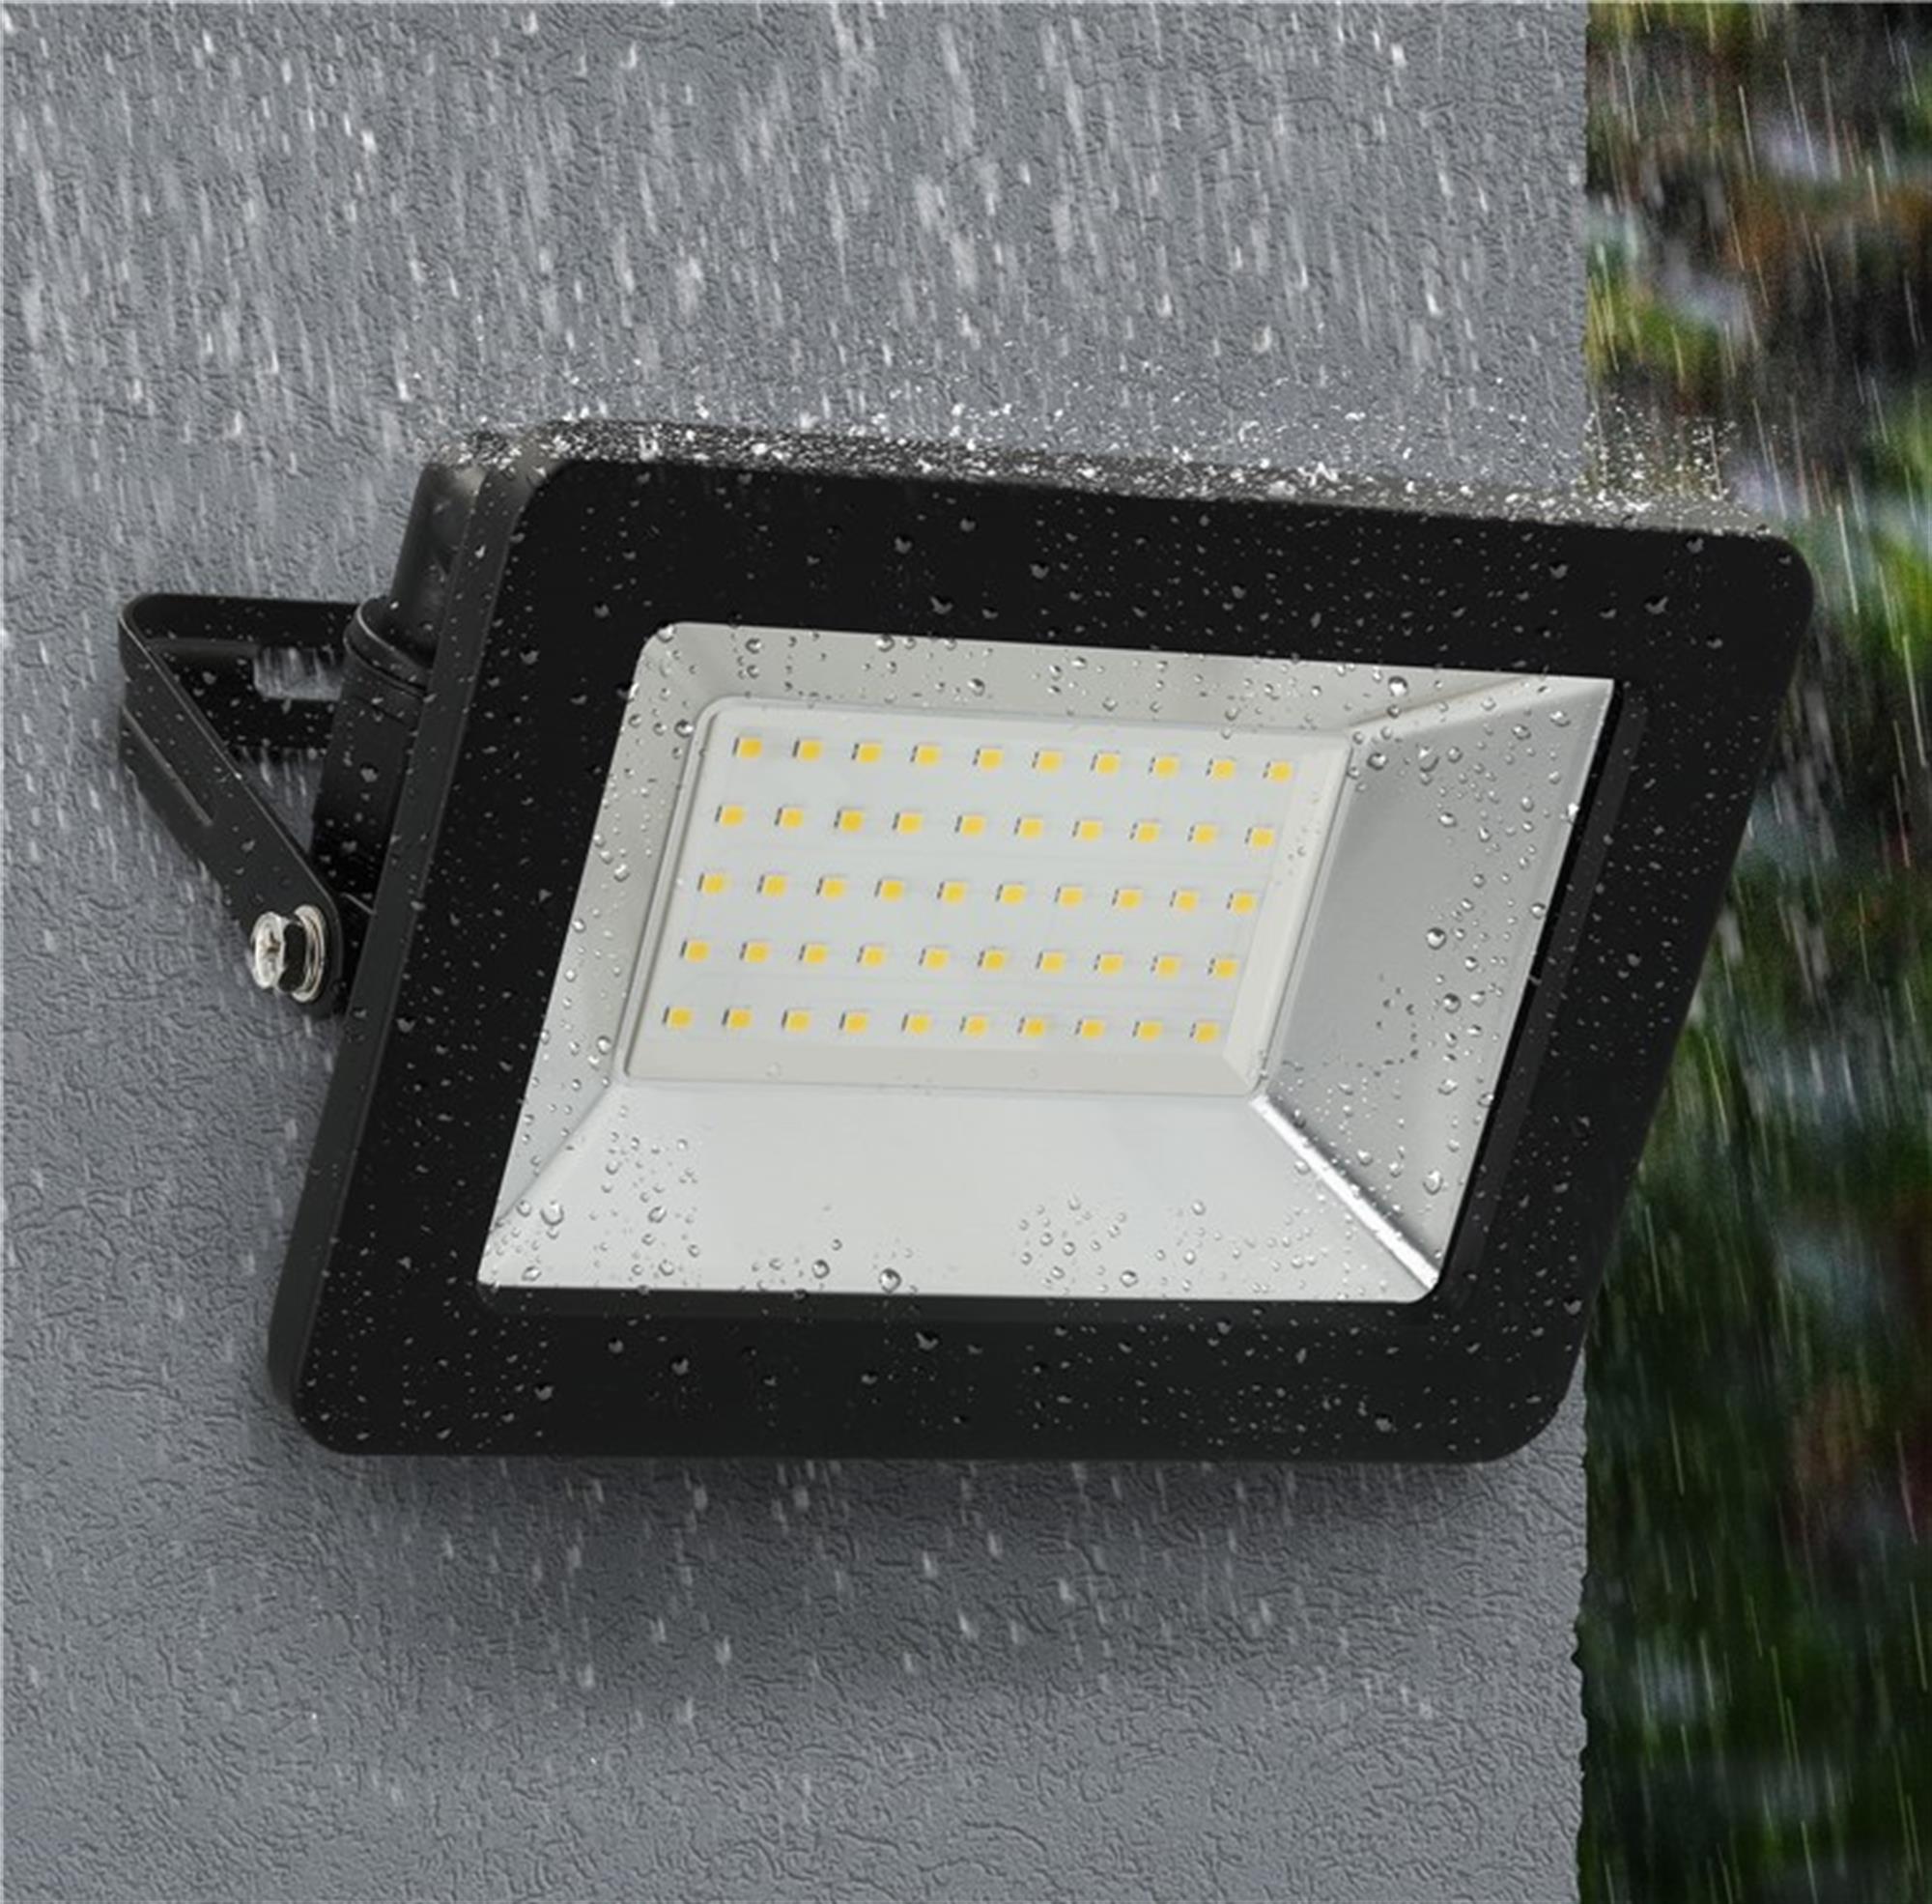 Goobay LED dış mekan spot ışığı, 30 W - 2550 lm, nötr beyaz ışık (4000 K) ve